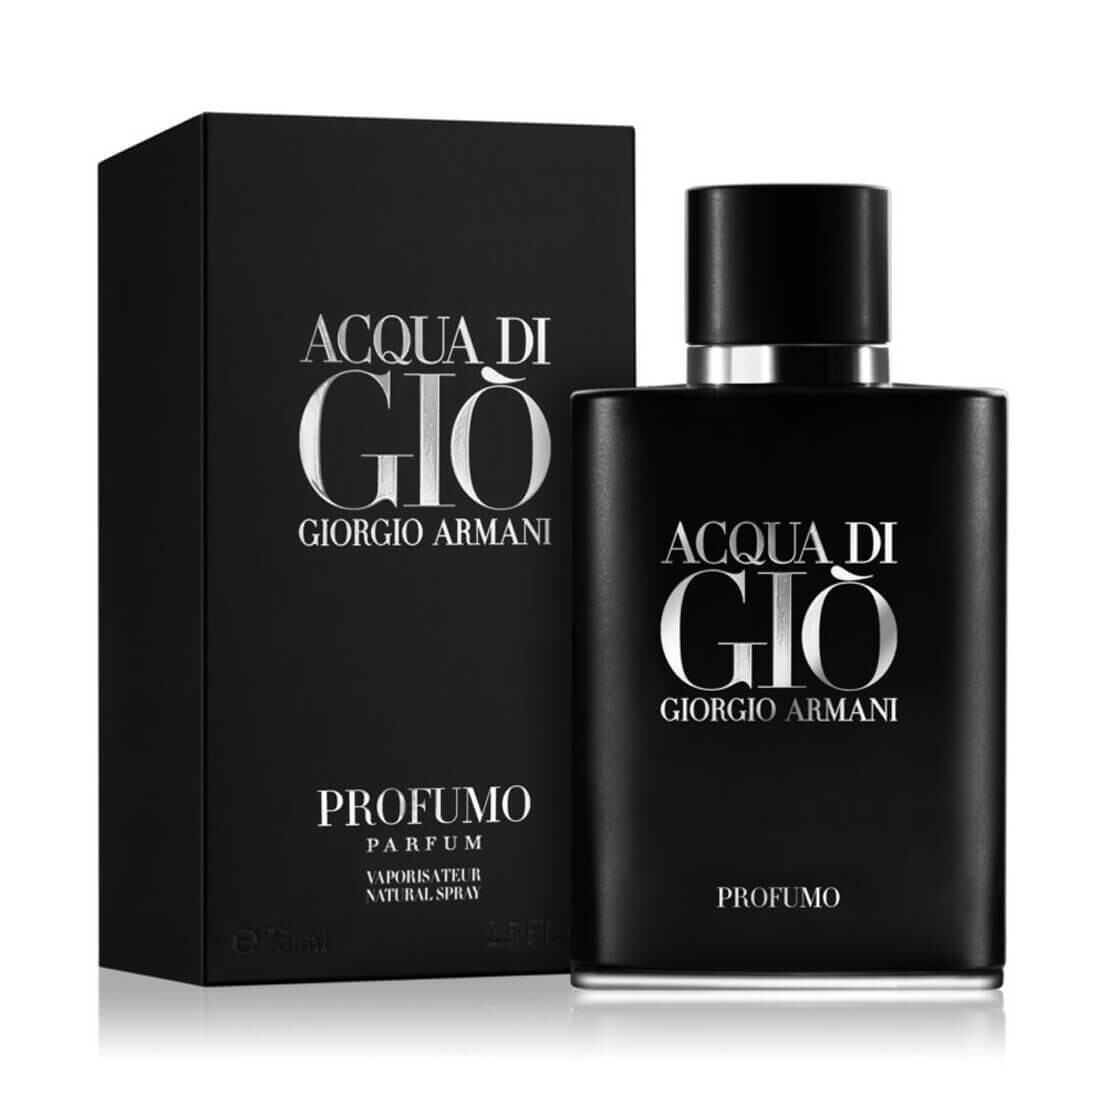 Giorgio Armani Acqua Di Gio Profumo Eau De Perfume For Men 75ml